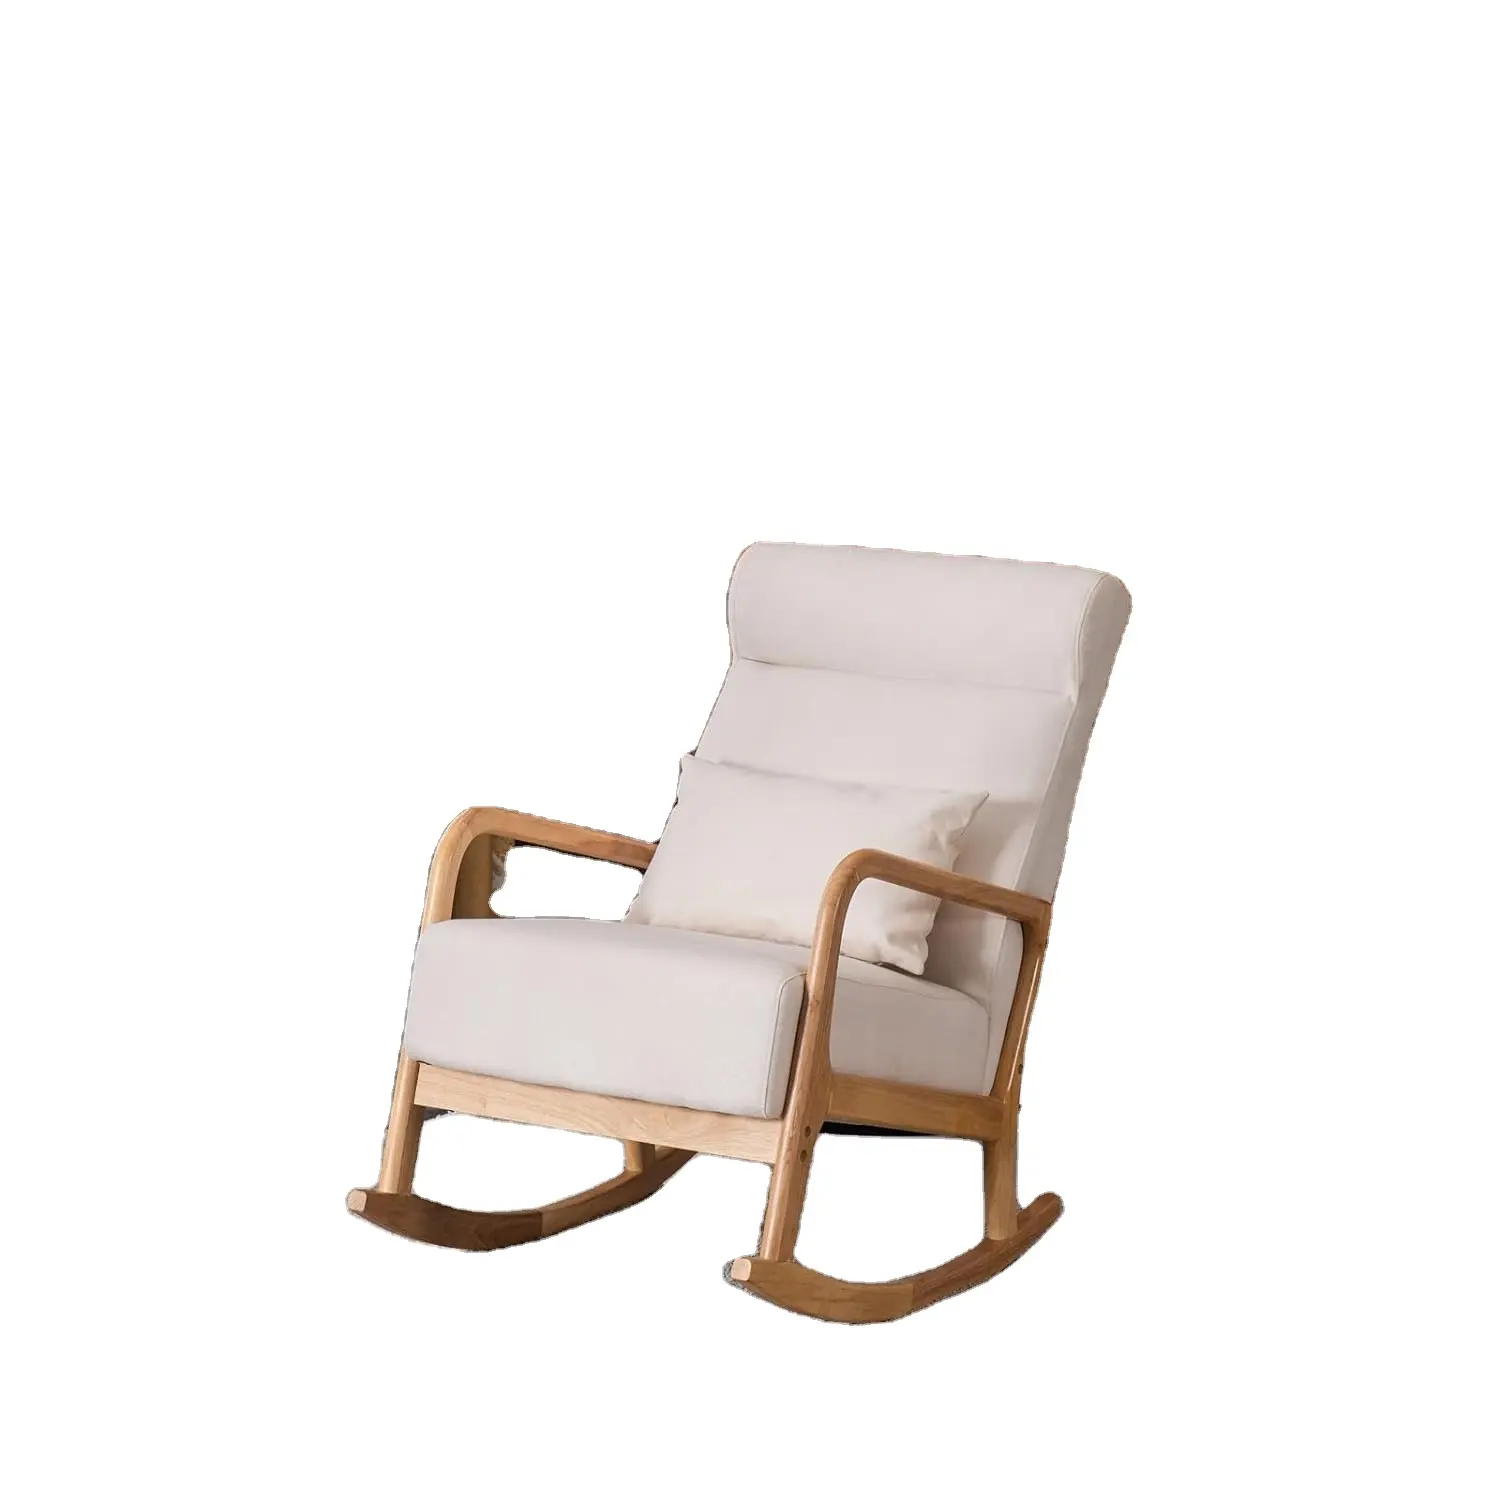 Nordic เดี่ยวเก้าอี้โยกขนาดเล็กอพาร์ทเมนท์โซฟาระเบียงห้องนอนเก้าอี้พักผ่อนห้องนั่งเล่นเฟอร์นิเจอร์โซฟา